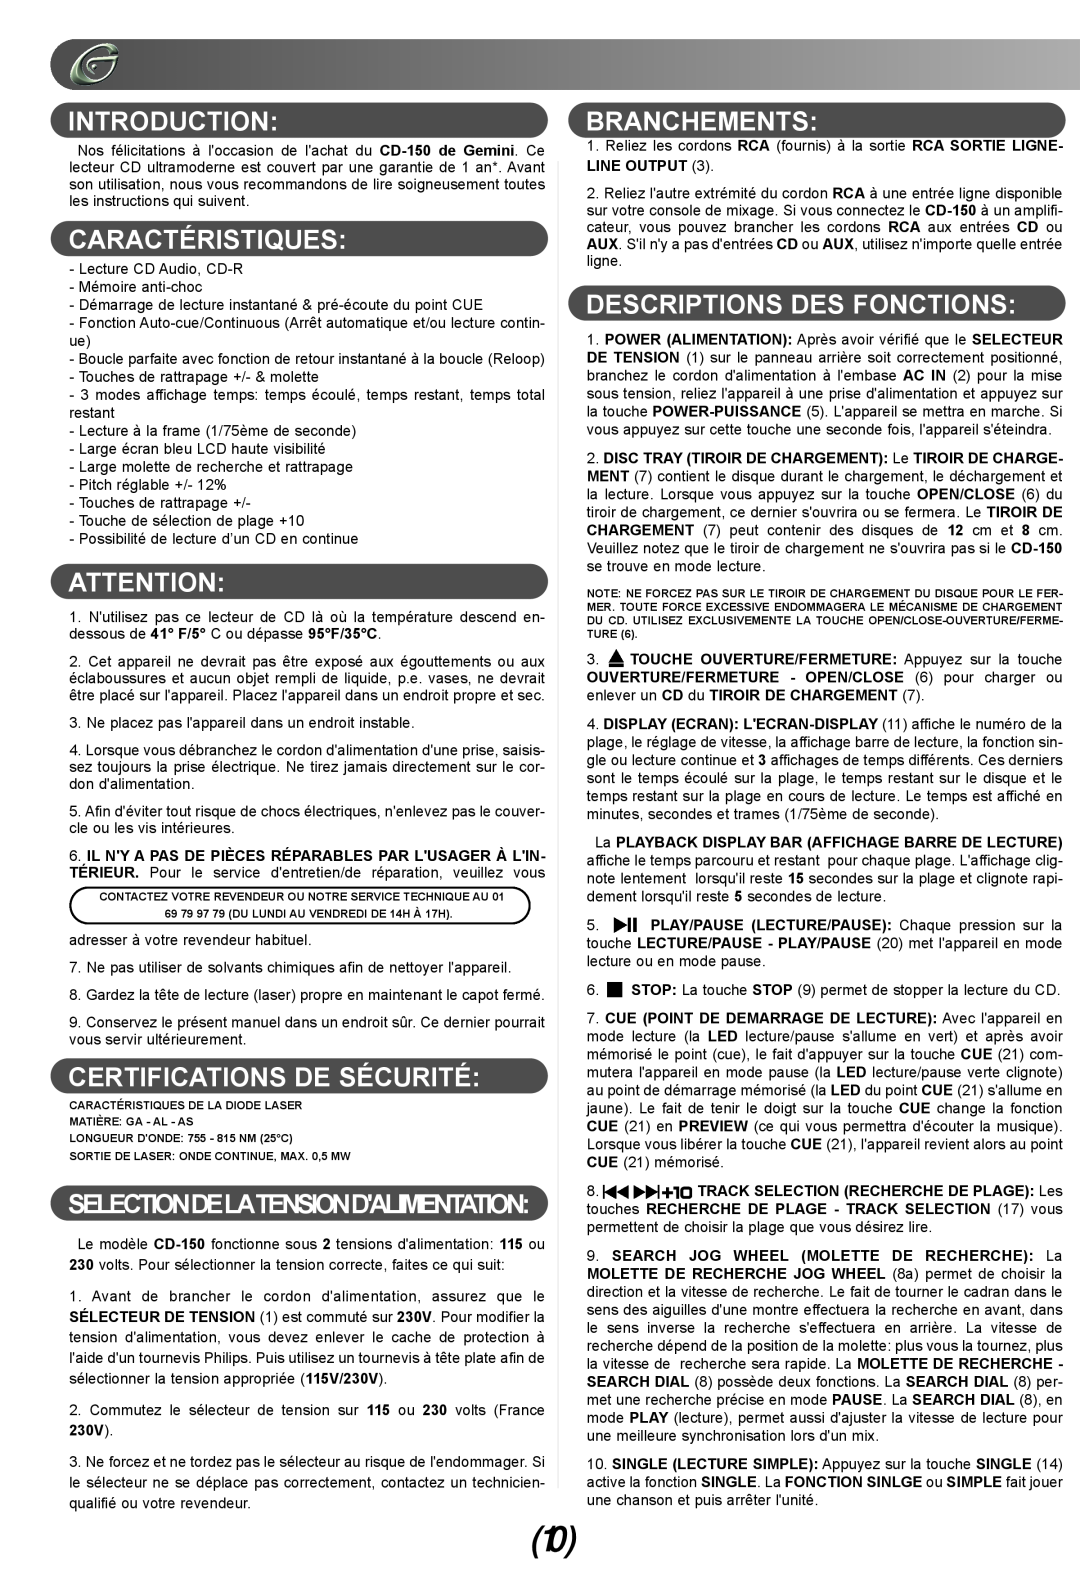 Gemini CD-150 manual Caractéristiques, Certifications De Sécurité, Branchements, Descriptions Des Fonctions, Introduction 